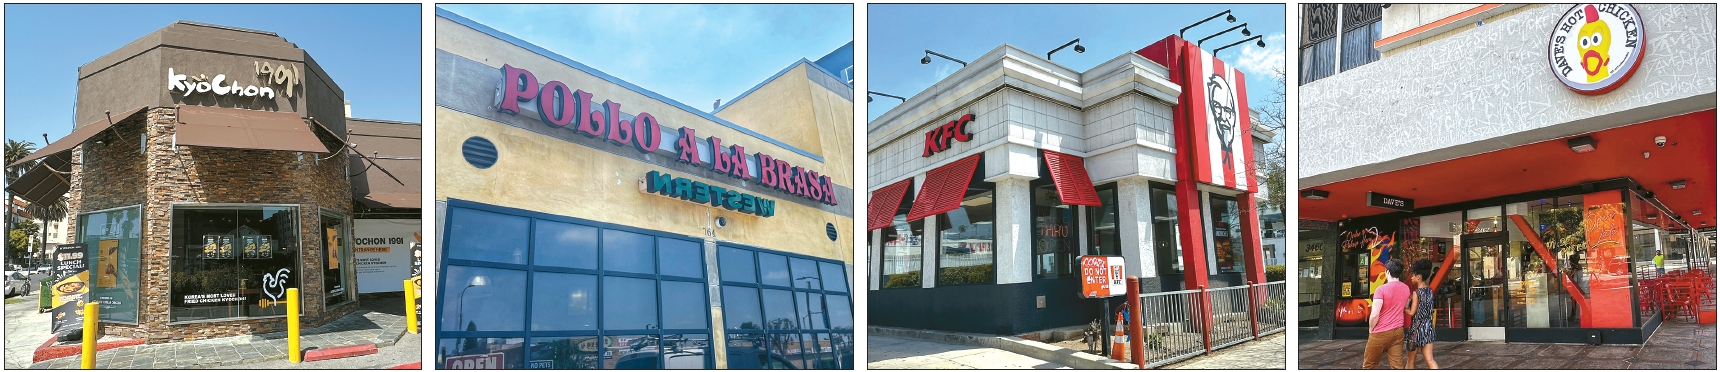 LA한인타운 약 2.8스퀘어마일 지역에 31개의 치킨집이 치열한 경쟁을 펼치고 있다. 왼쪽부터 교촌치킨, 뽀요아라브라사, KFC, 데이브스핫치킨 전경.   김상진 기자